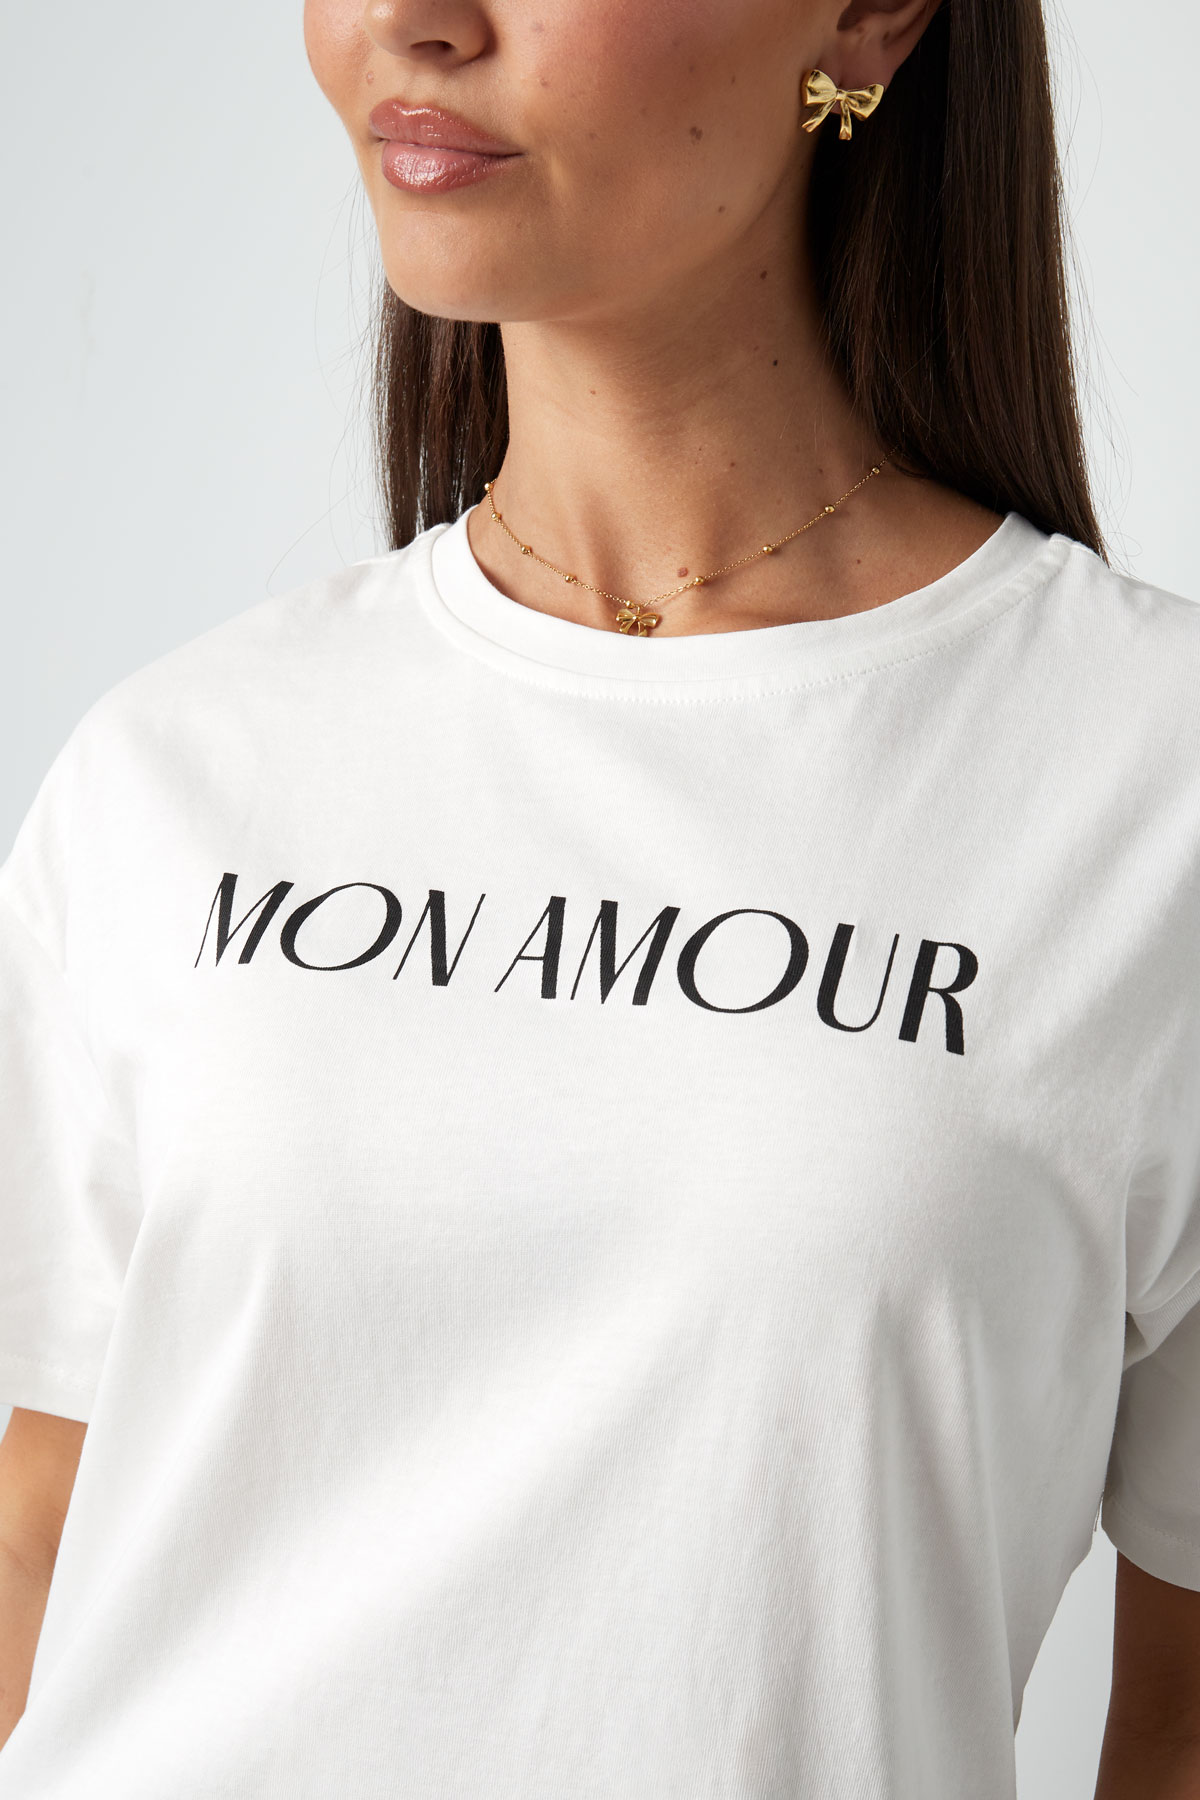 T-shirt mon amour - siyah beyaz Resim5